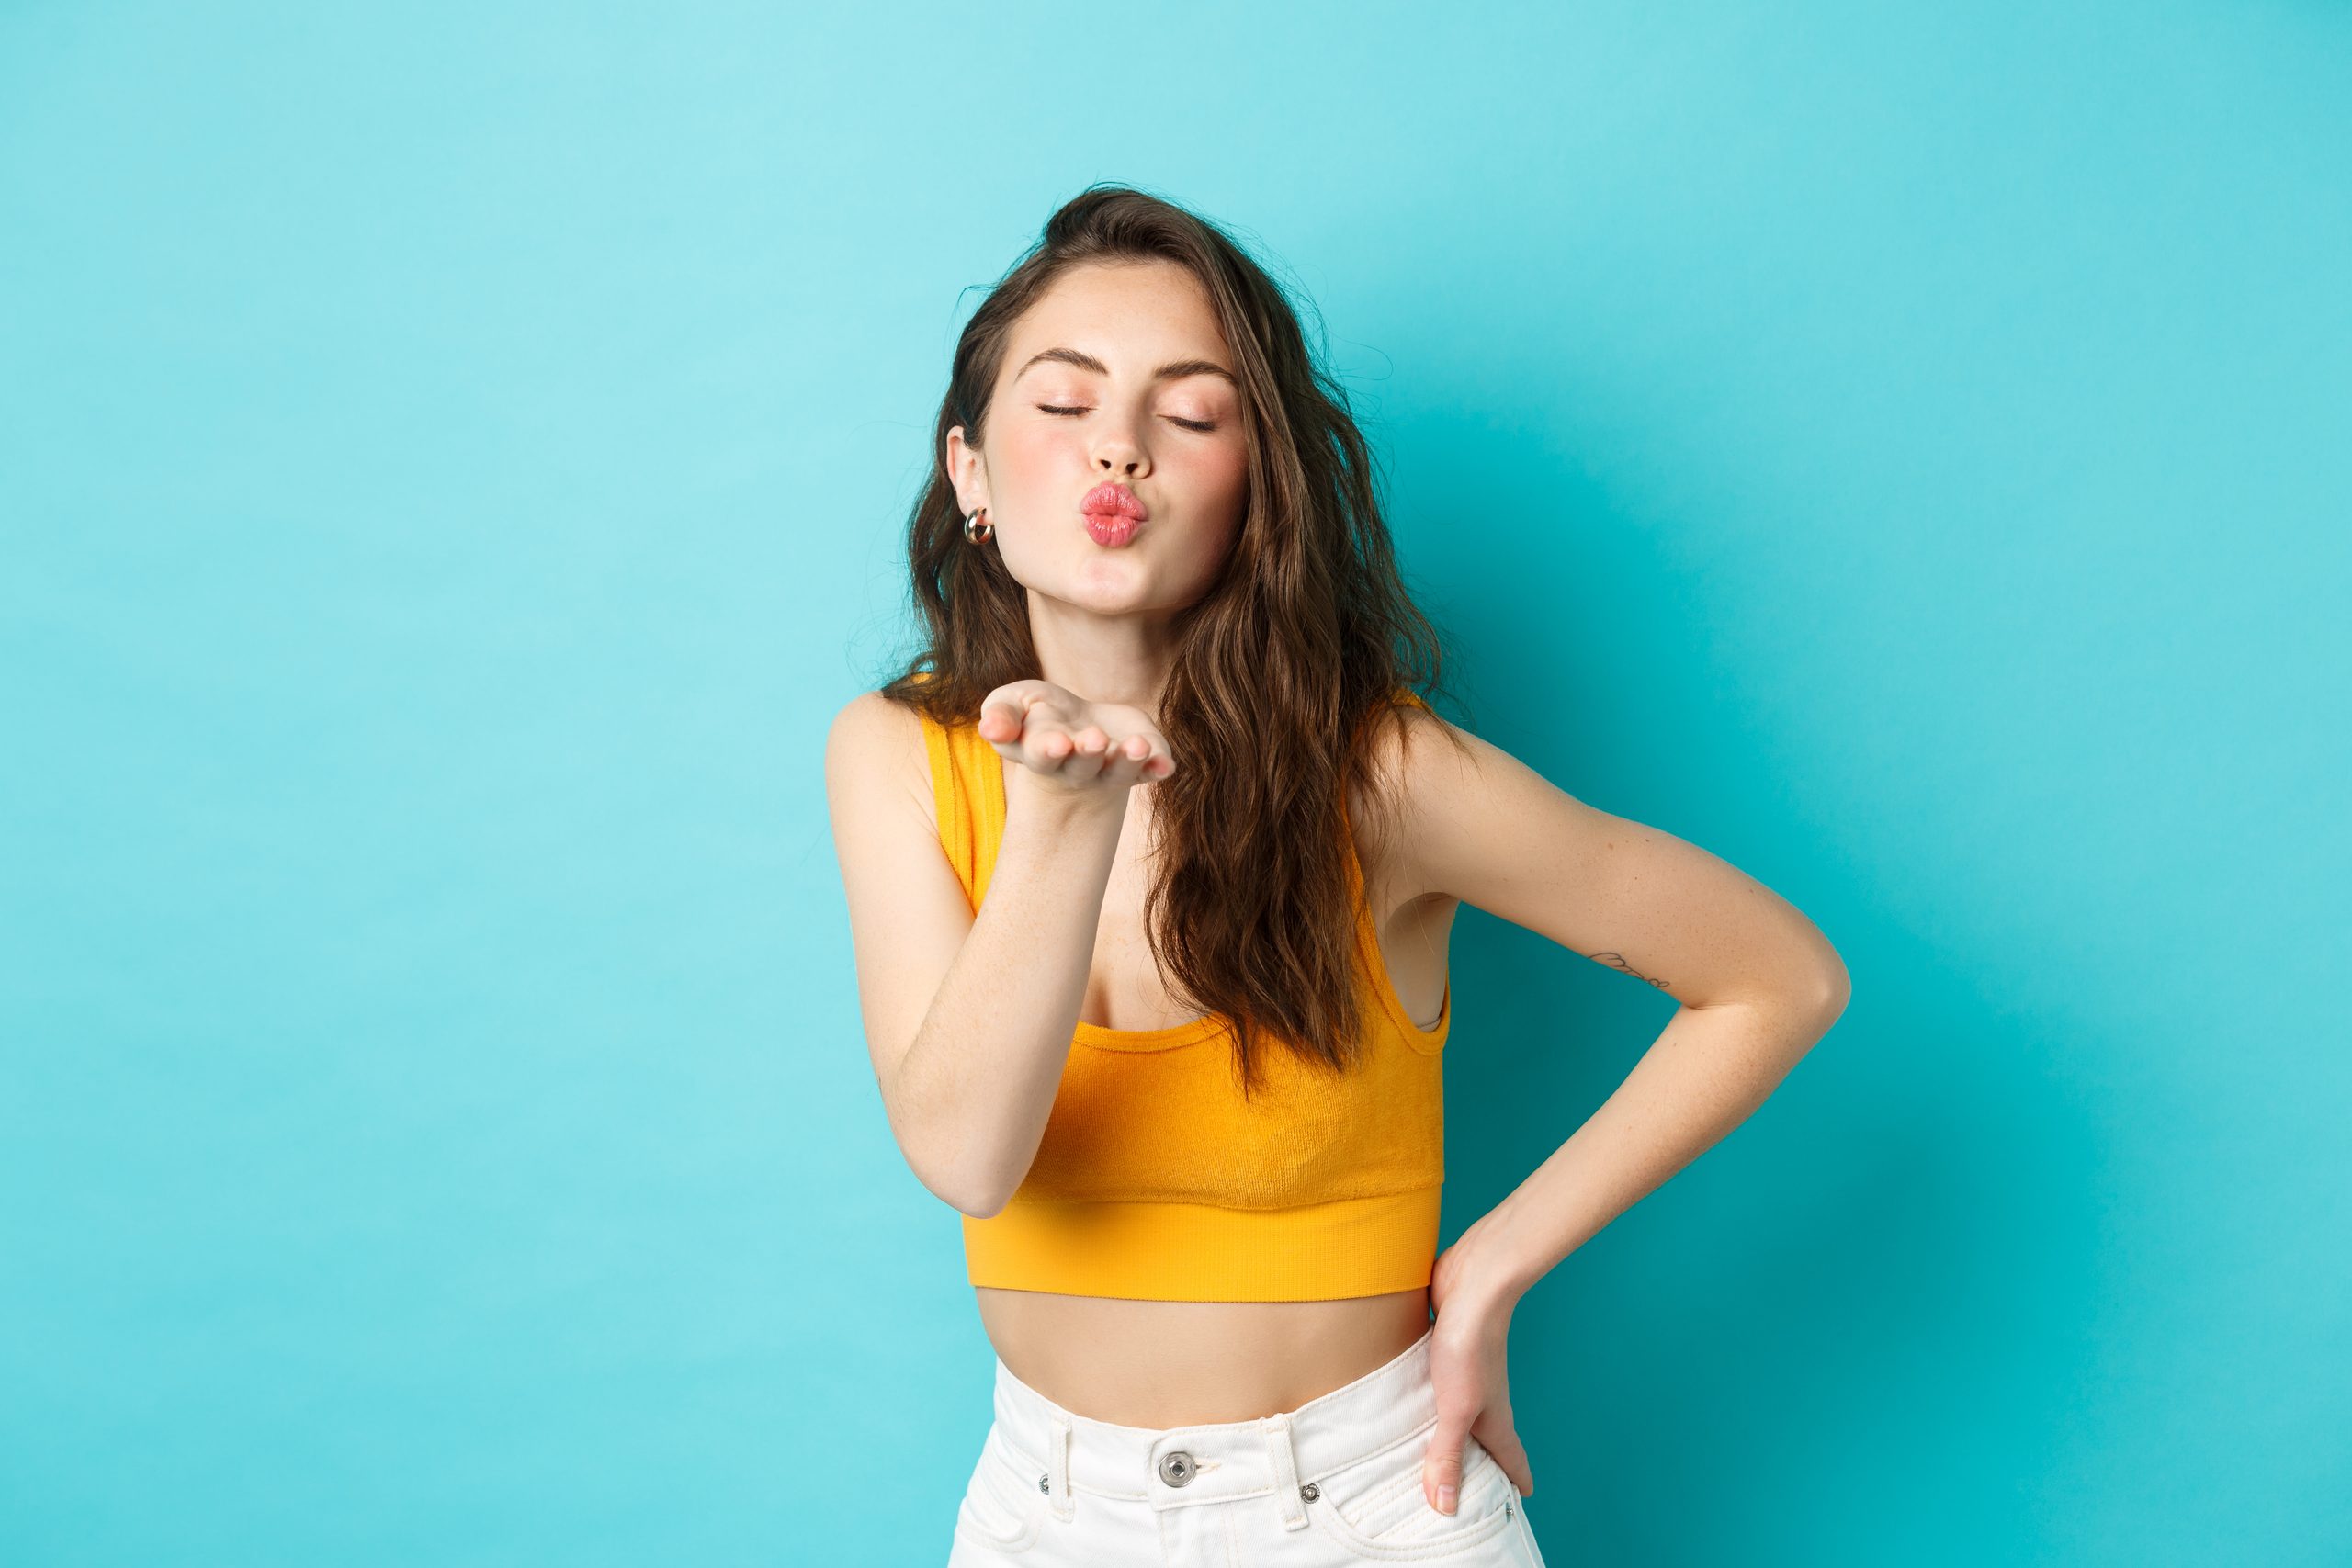 Volle Lippen schminken: In 3 Schritten zum Kussmund